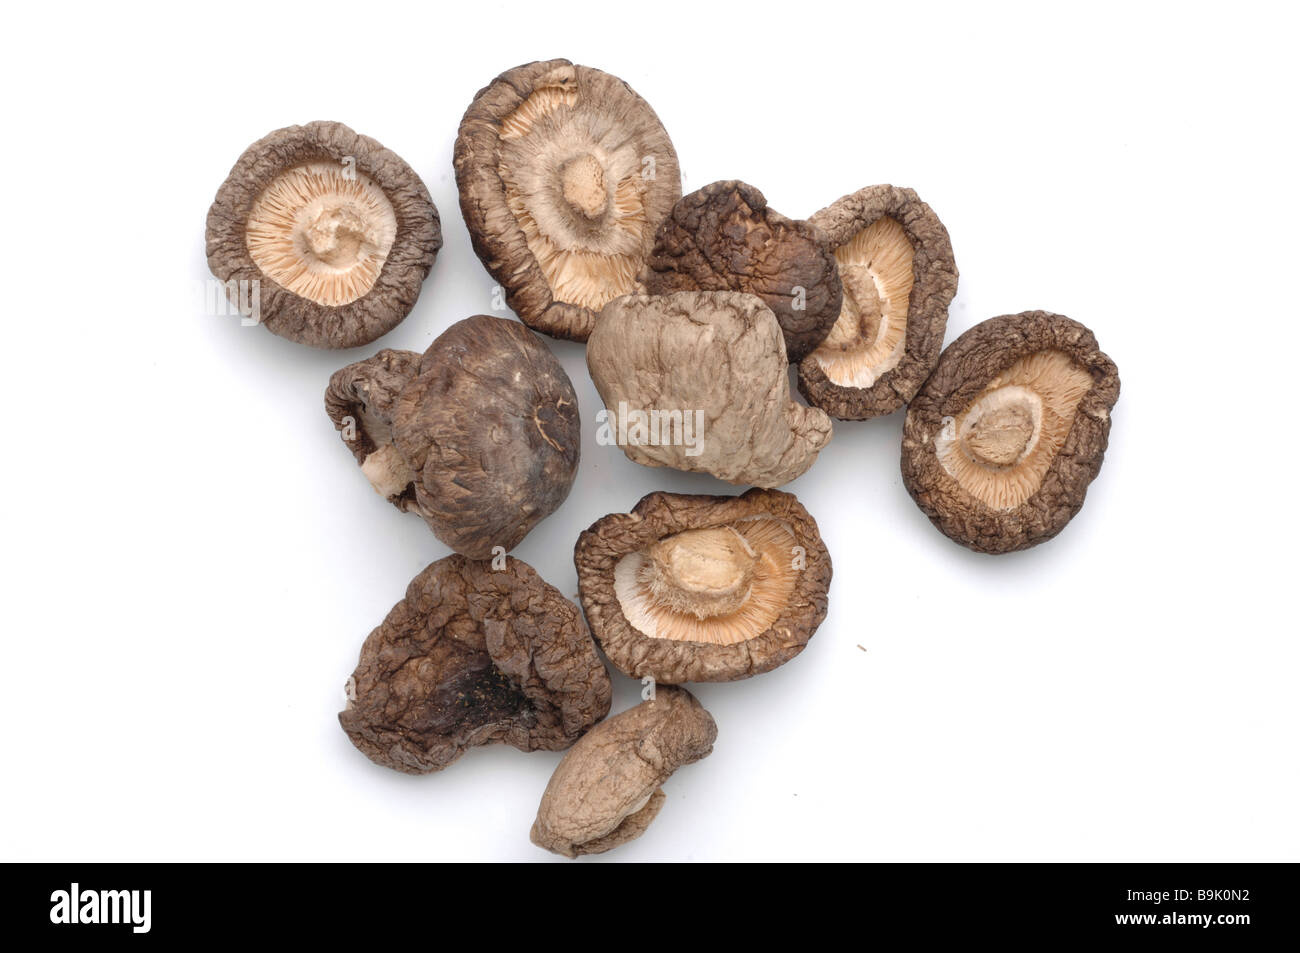 Le shiitake Lentinula edodes est un champignon comestible originaire d'Asie utilisée comme plante médicinale et alimentaire Banque D'Images